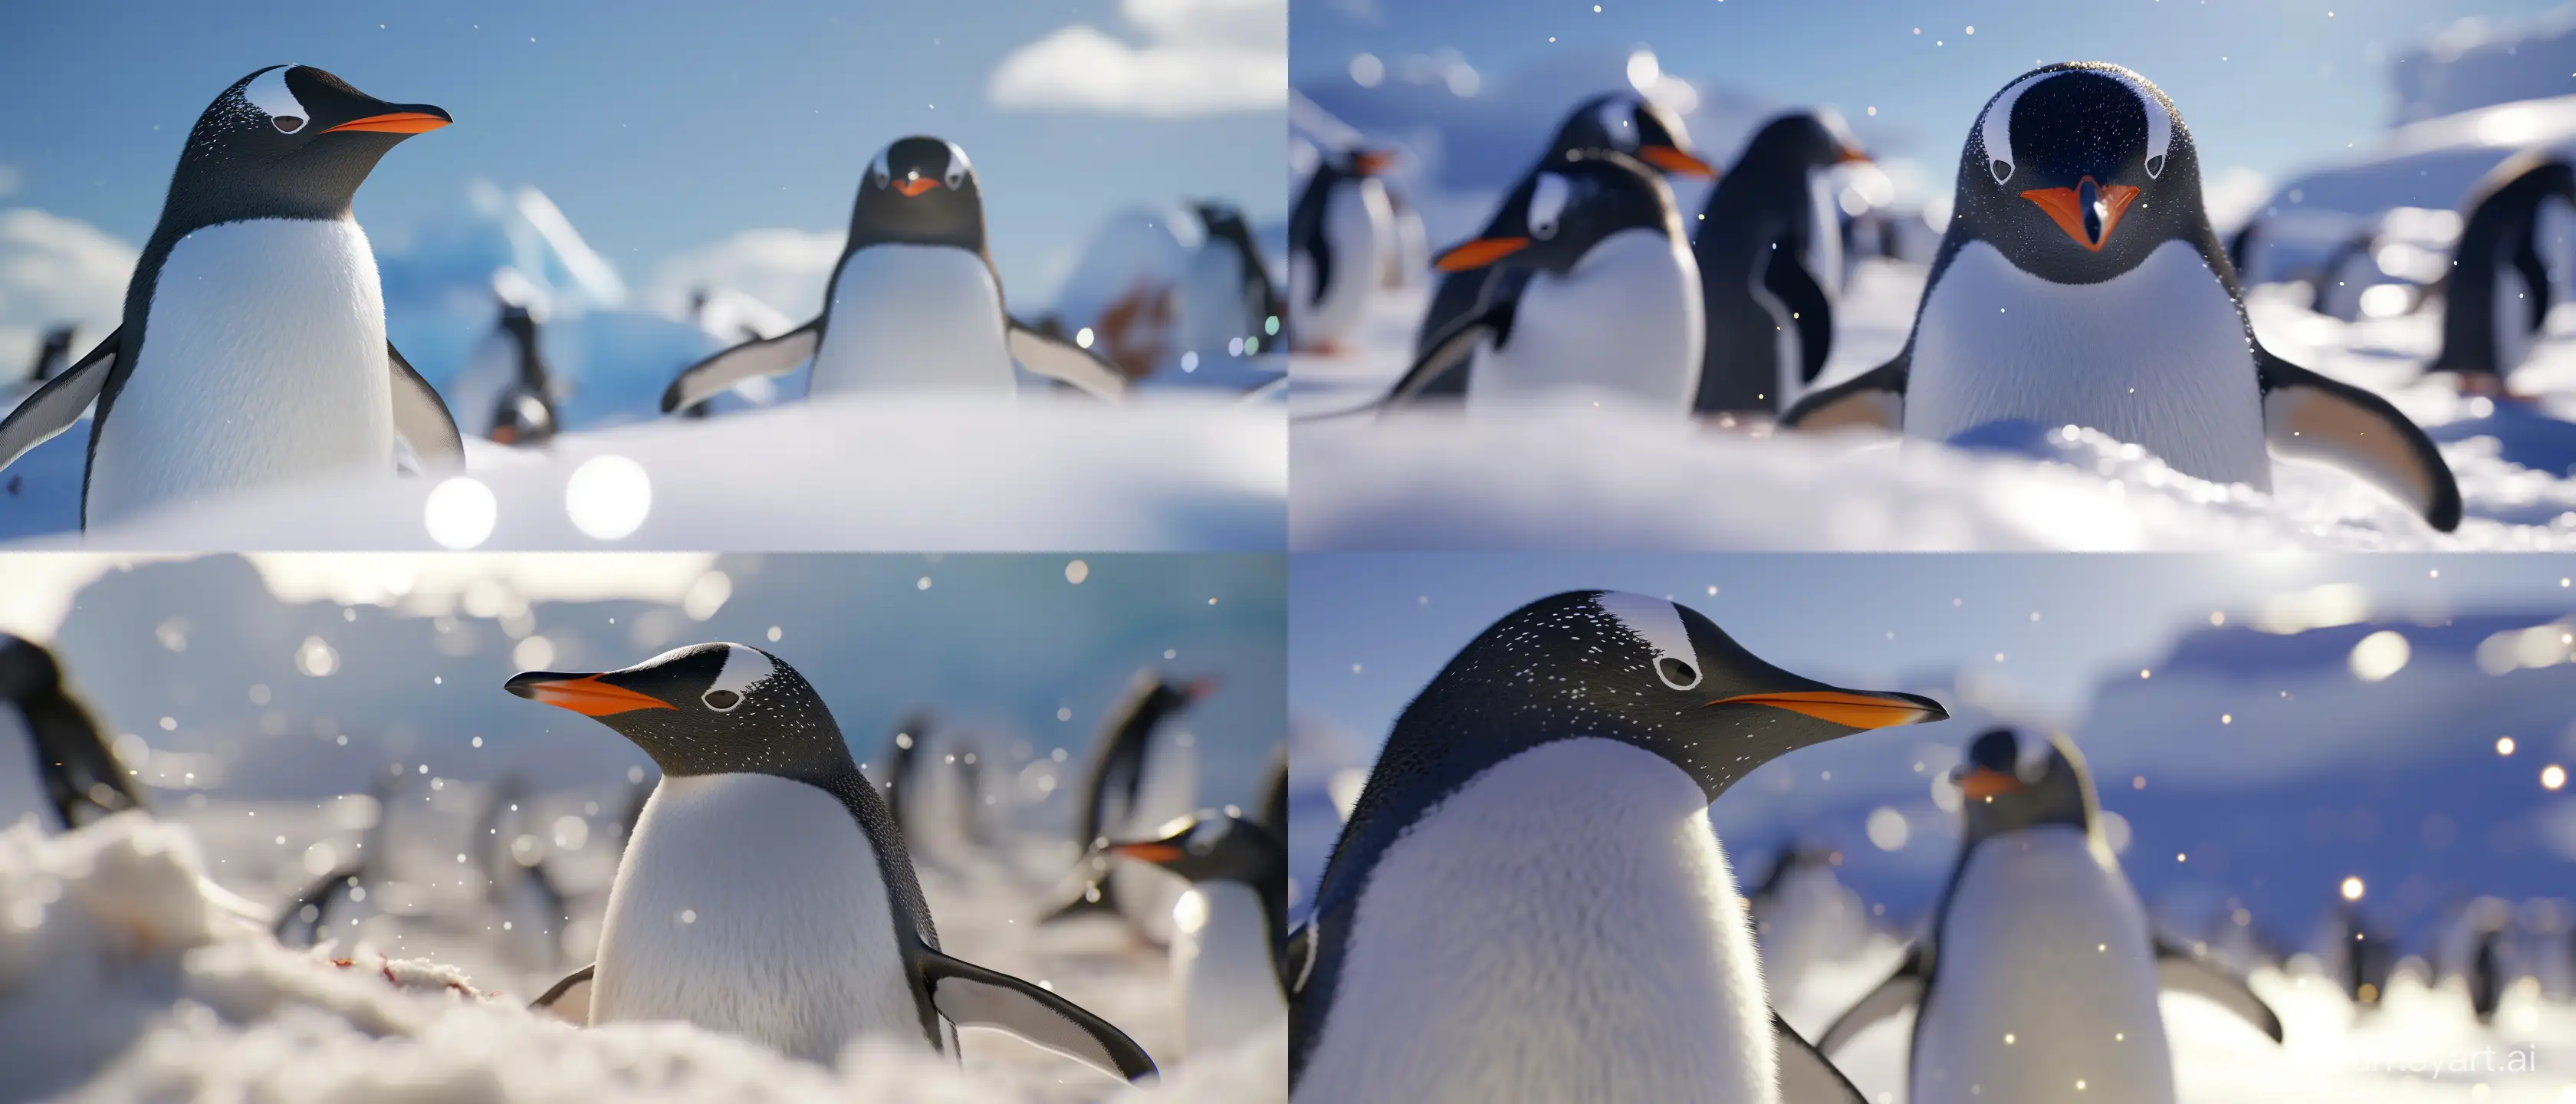 HyperRealistic-Penguins-in-Antarctic-Cinematic-Masterpiece